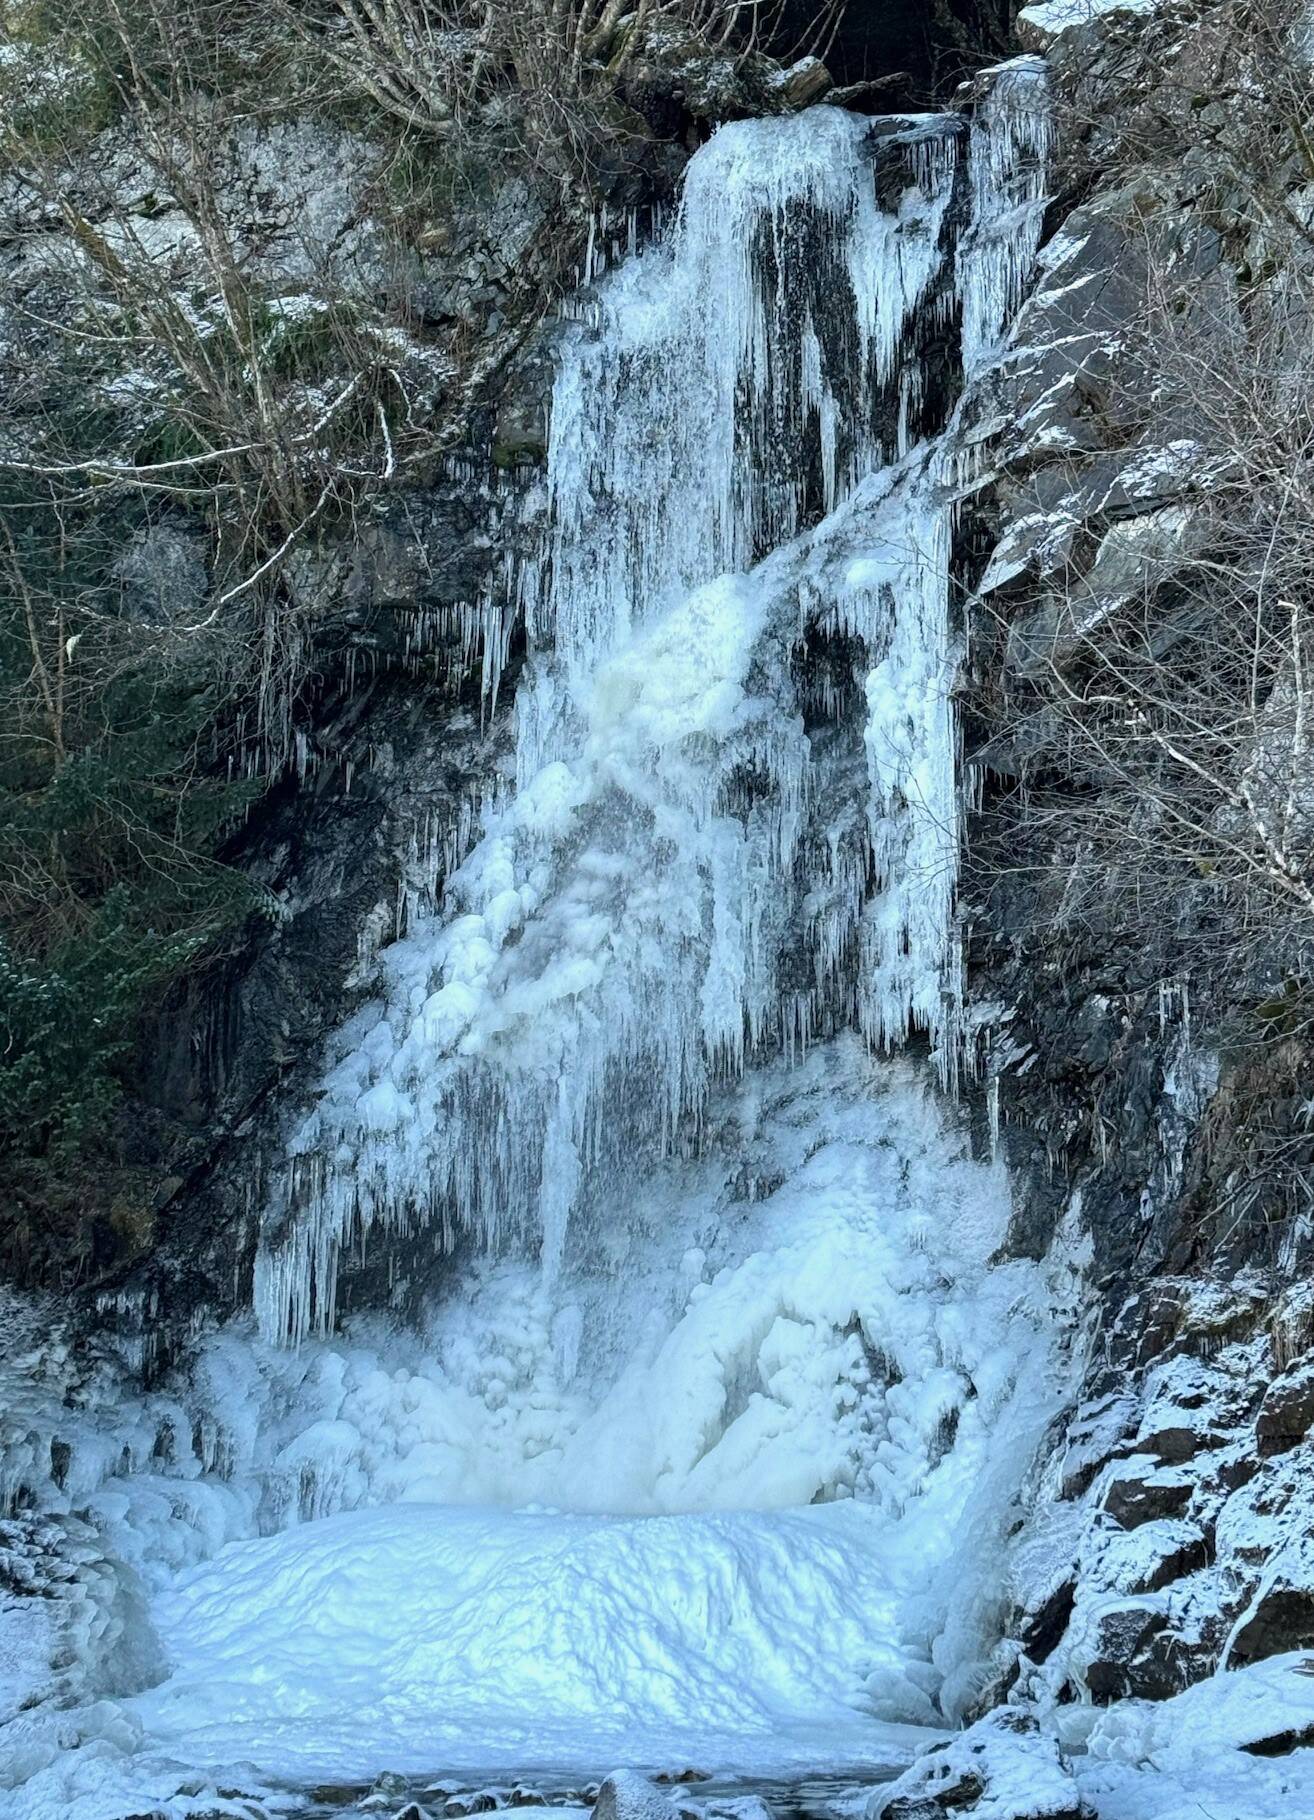 A frozen waterfall on N. Douglas Highway on Jan. 10. (Photo by Denise Carroll)